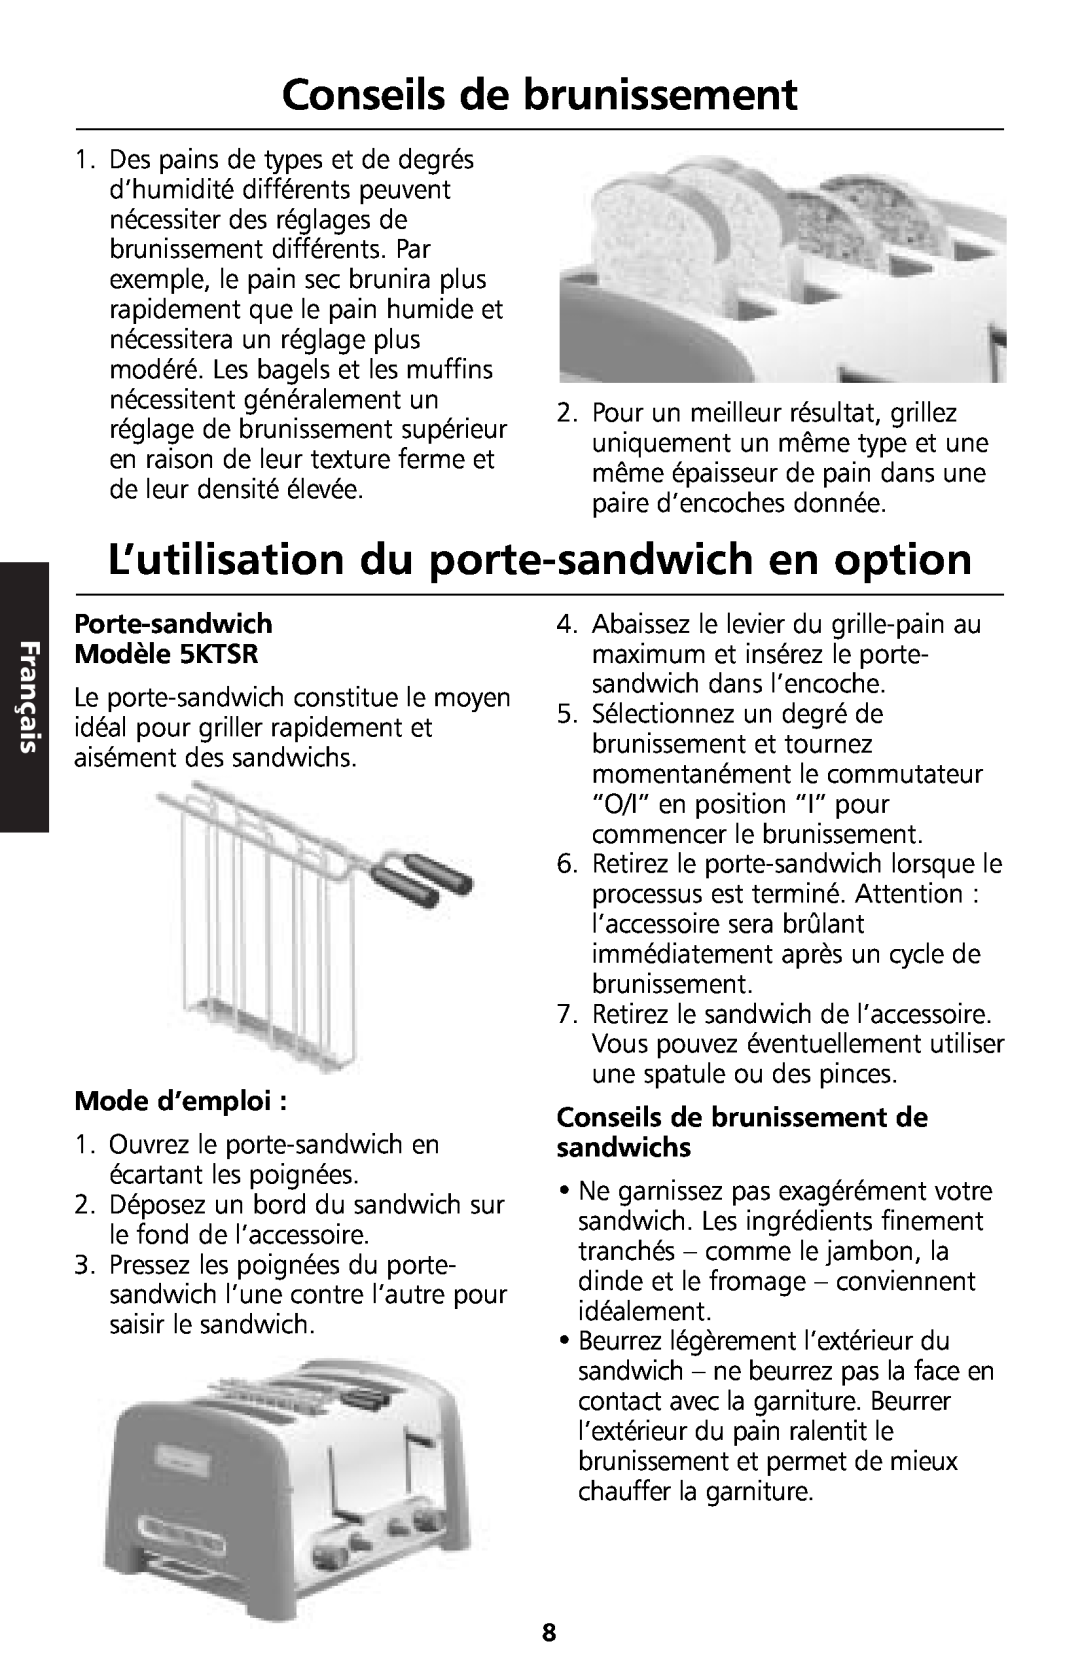 KitchenAid 5KTT890 manual Conseils de brunissement, L’utilisation du porte-sandwichen option, Français, Mode d’emploi 